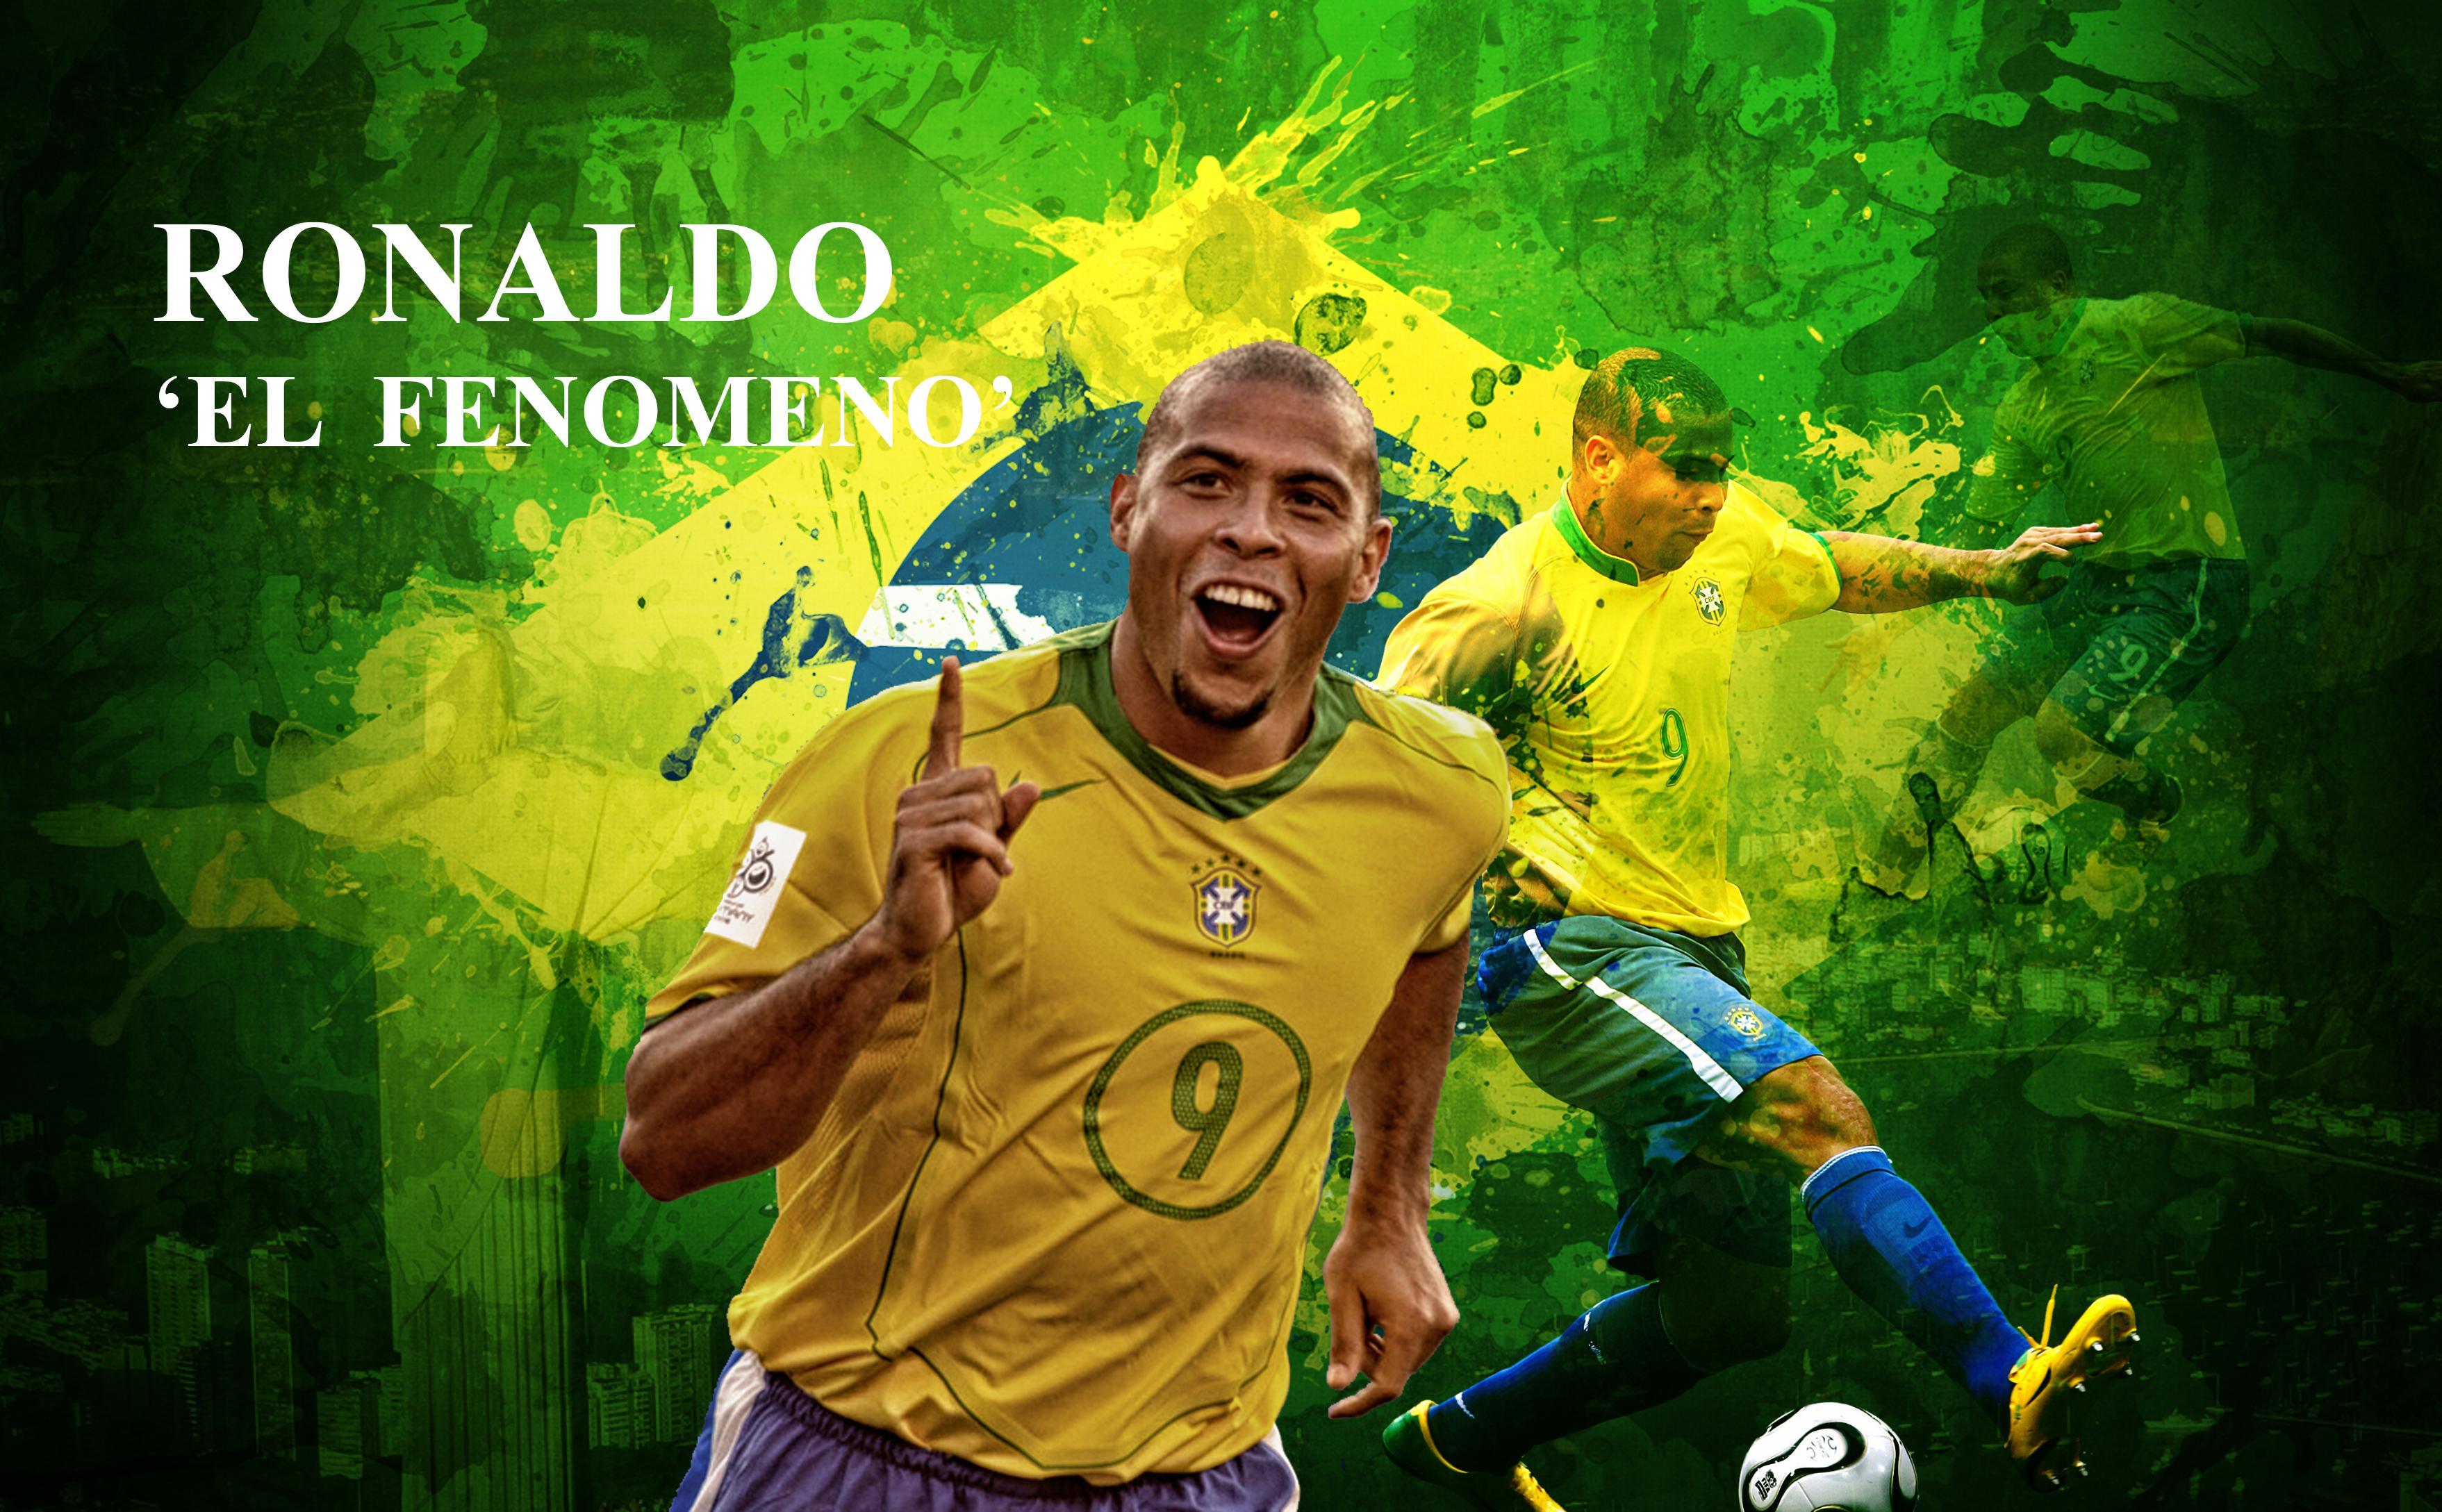 Ronaldo 'El Fenomeno' Wallpaper